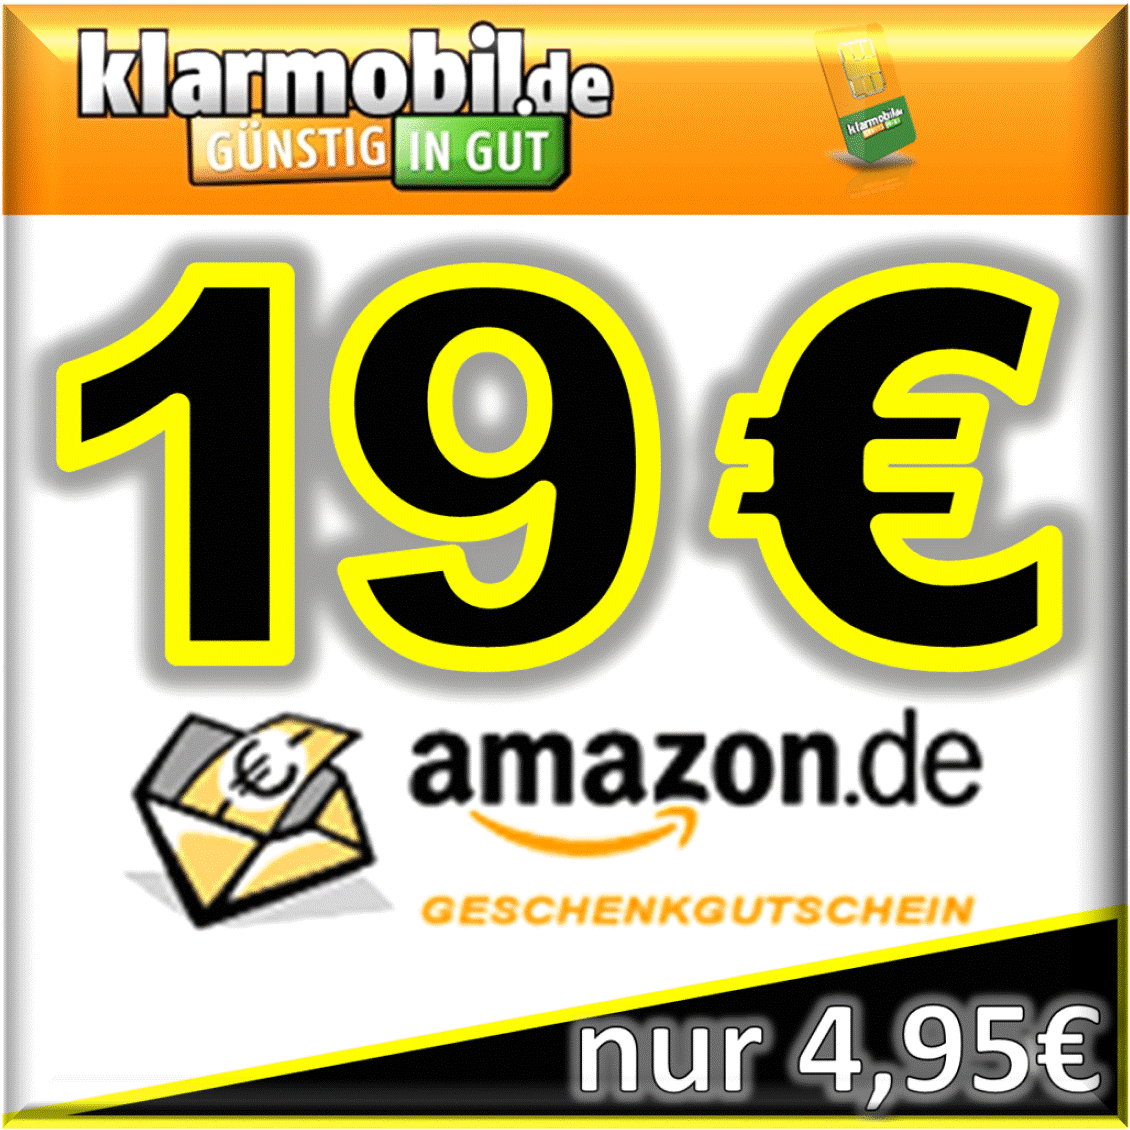 Nur noch heute! 38,- Euro Amazon-Gutschein für nur 9,90 Euro mit zwei klarmobil SIM-Karten